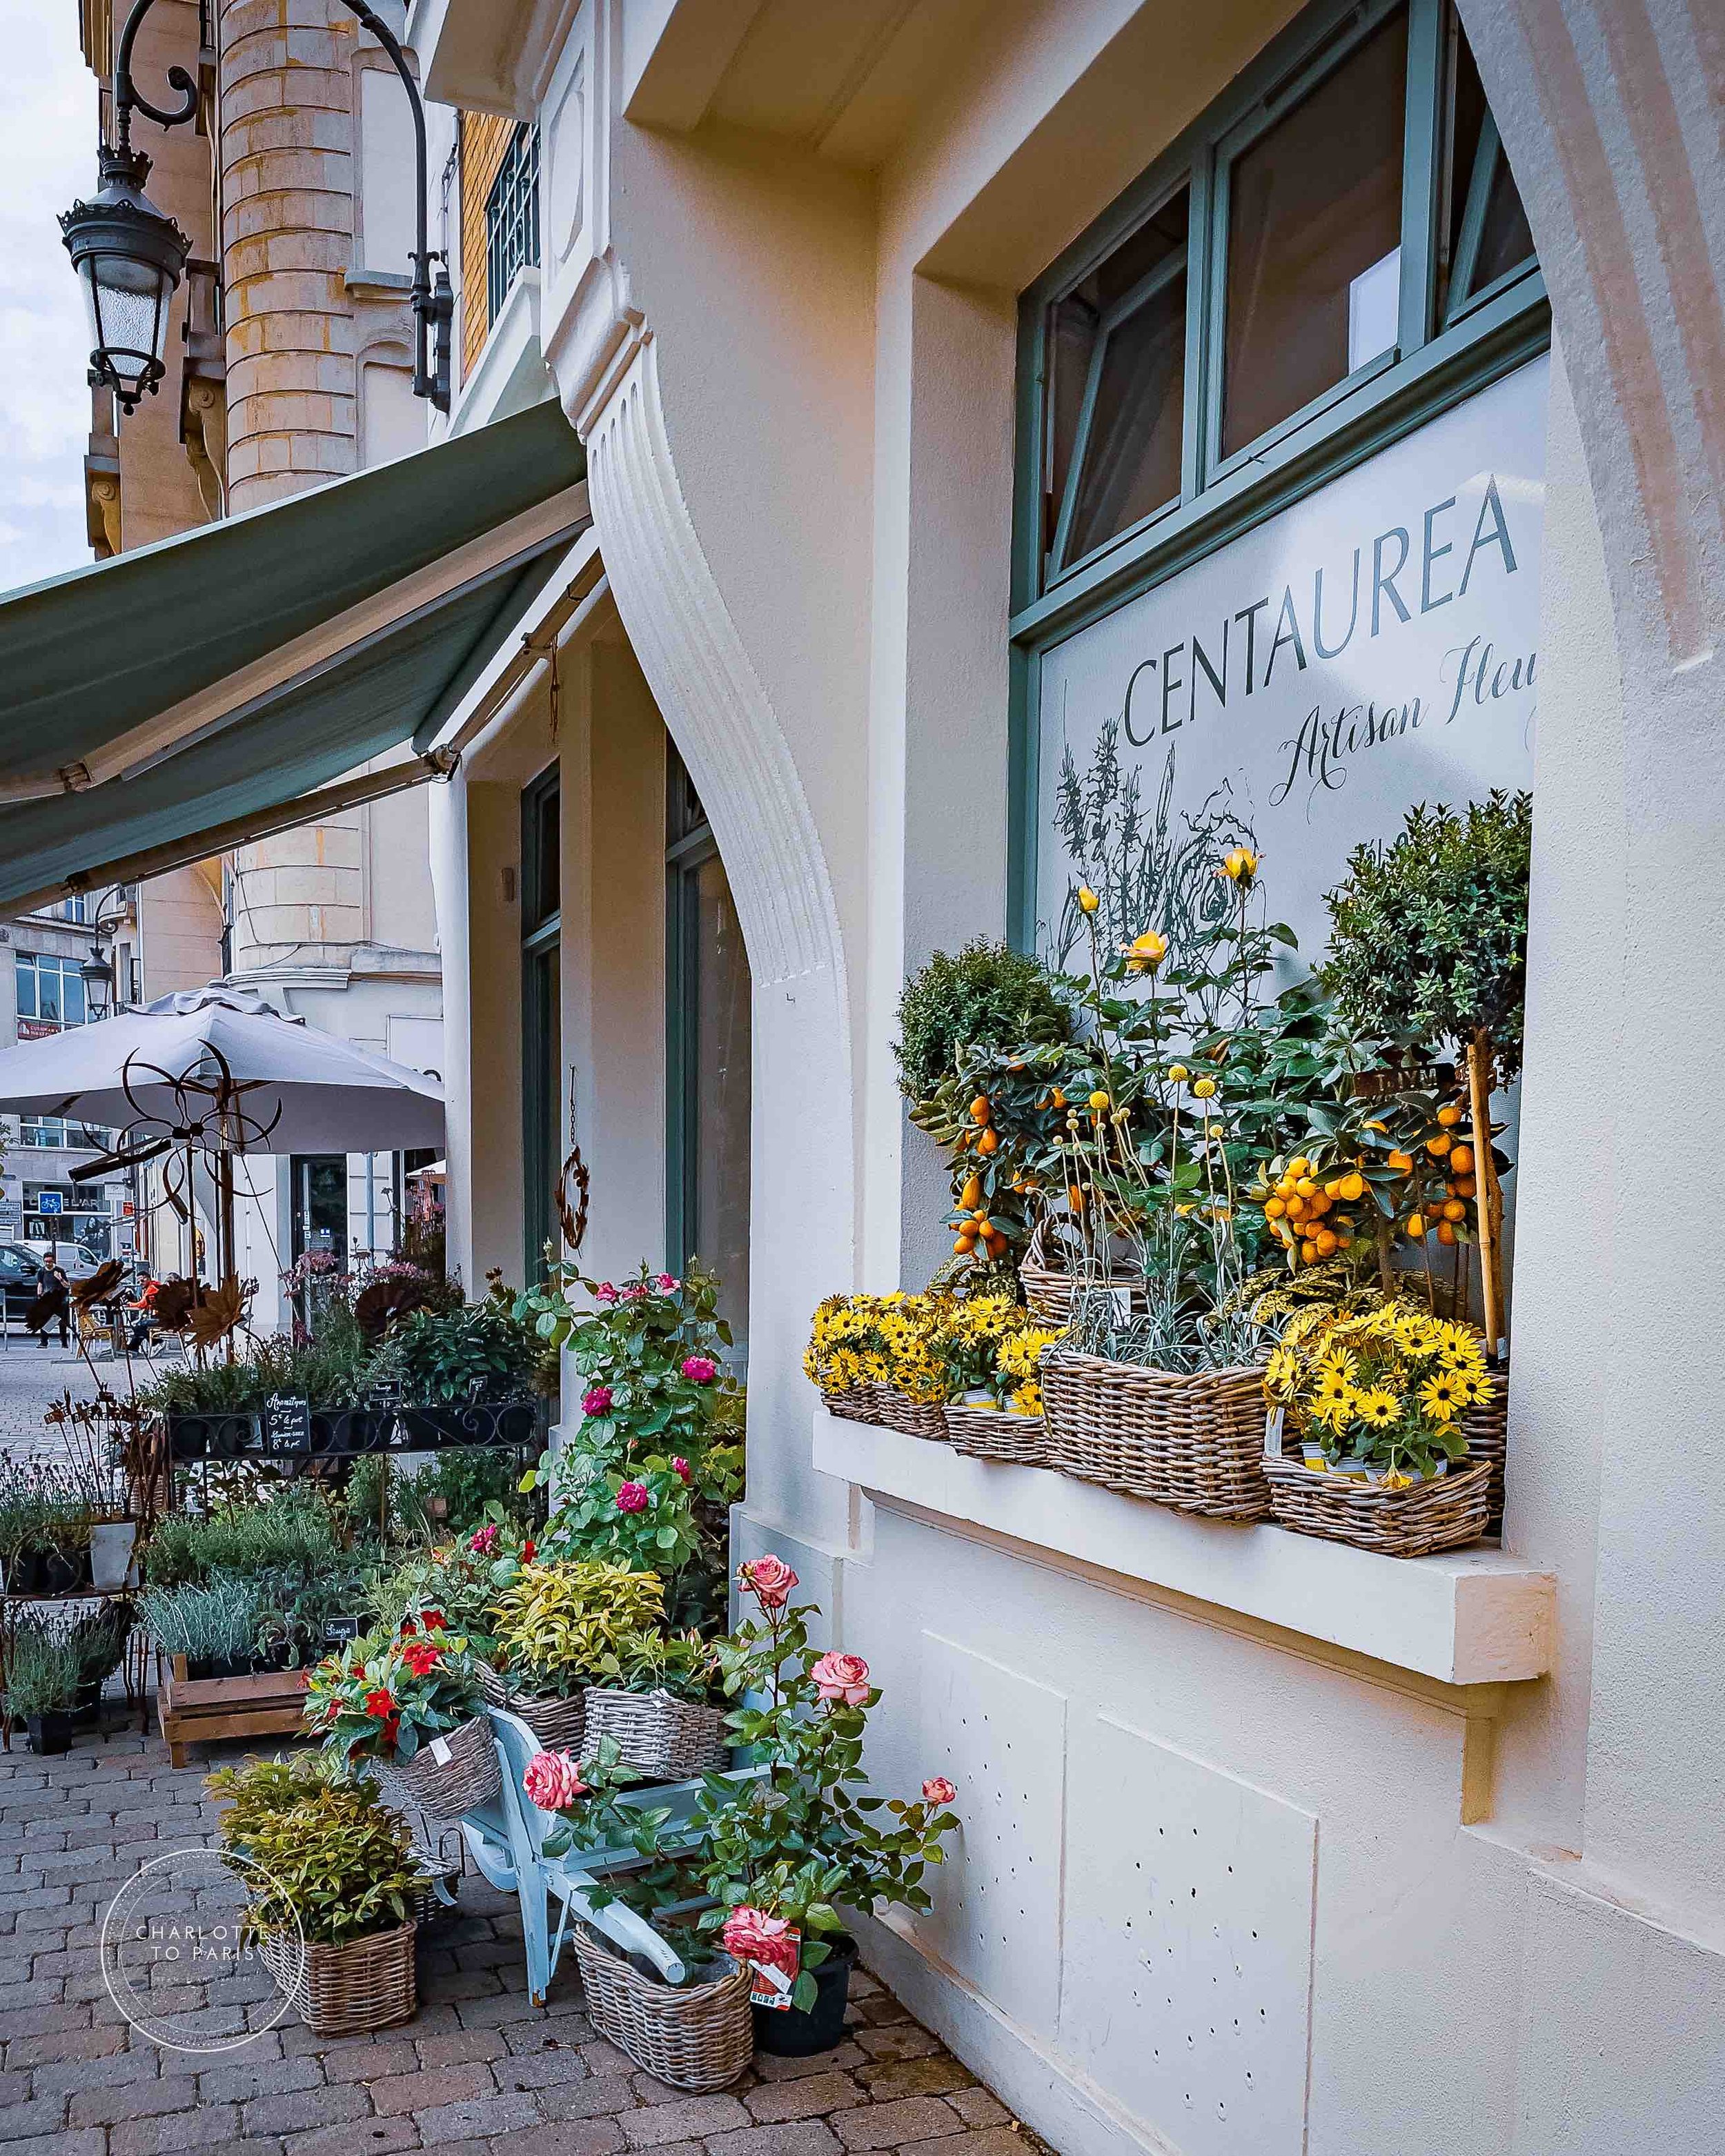 A Flower Shop, Place du Forum